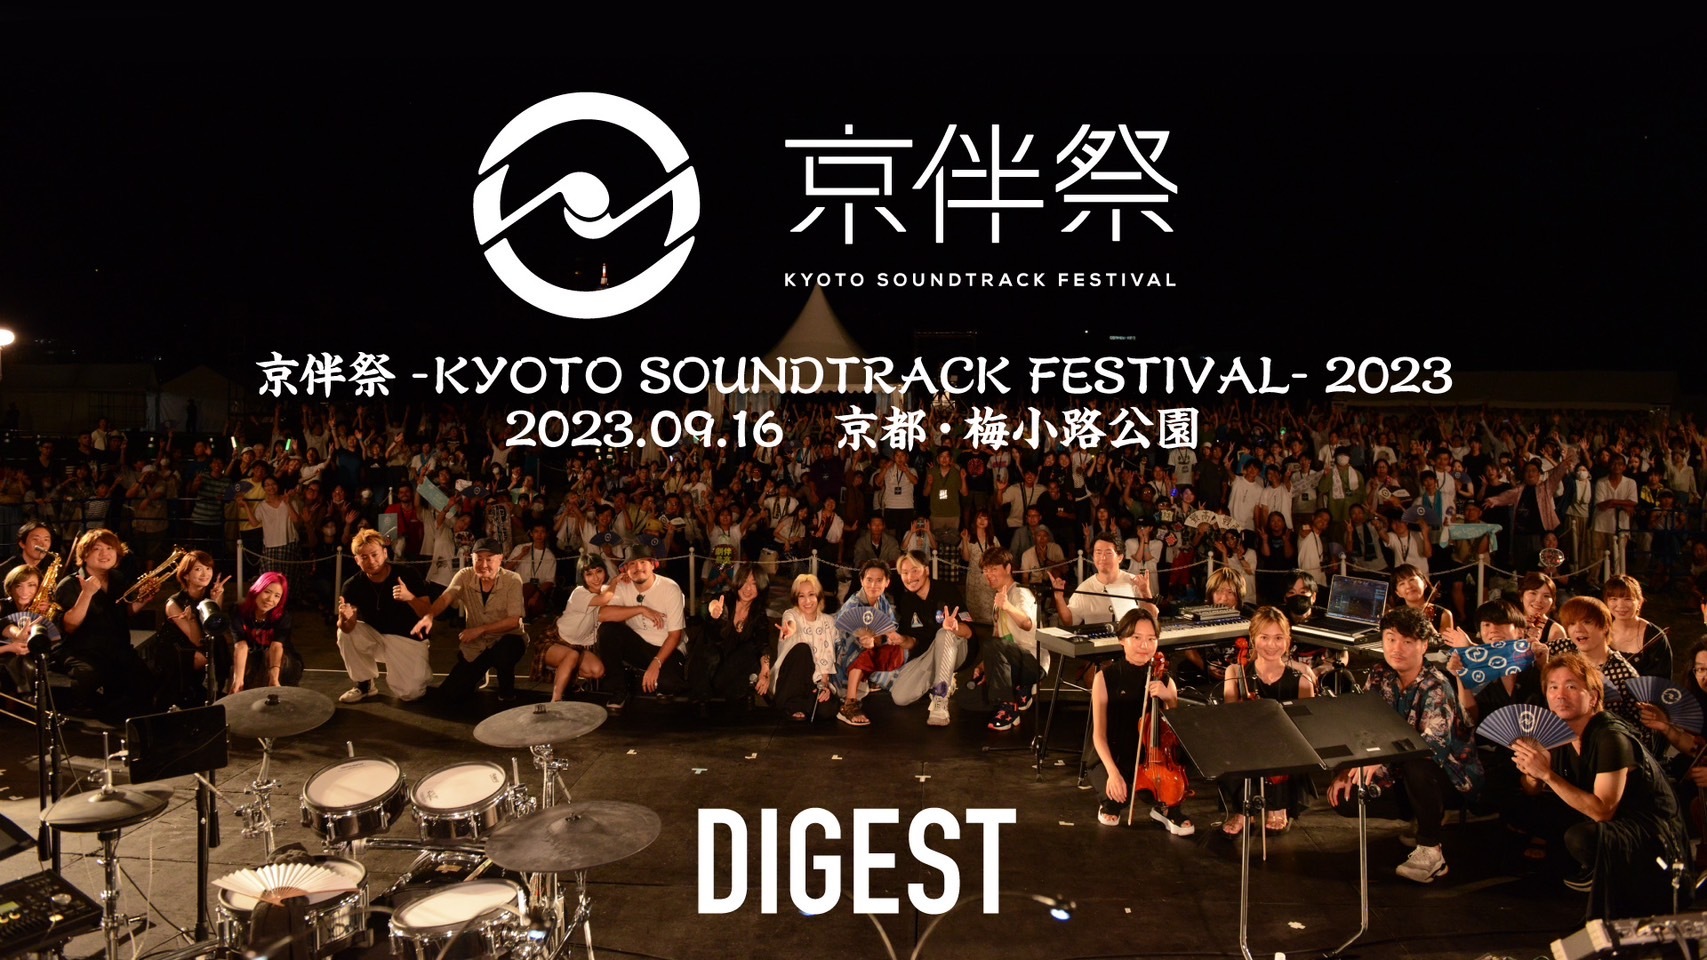 Digest video of "KYOBANSAI -KYOTO SOUNDTRACK FESTIVAL- 2023"!